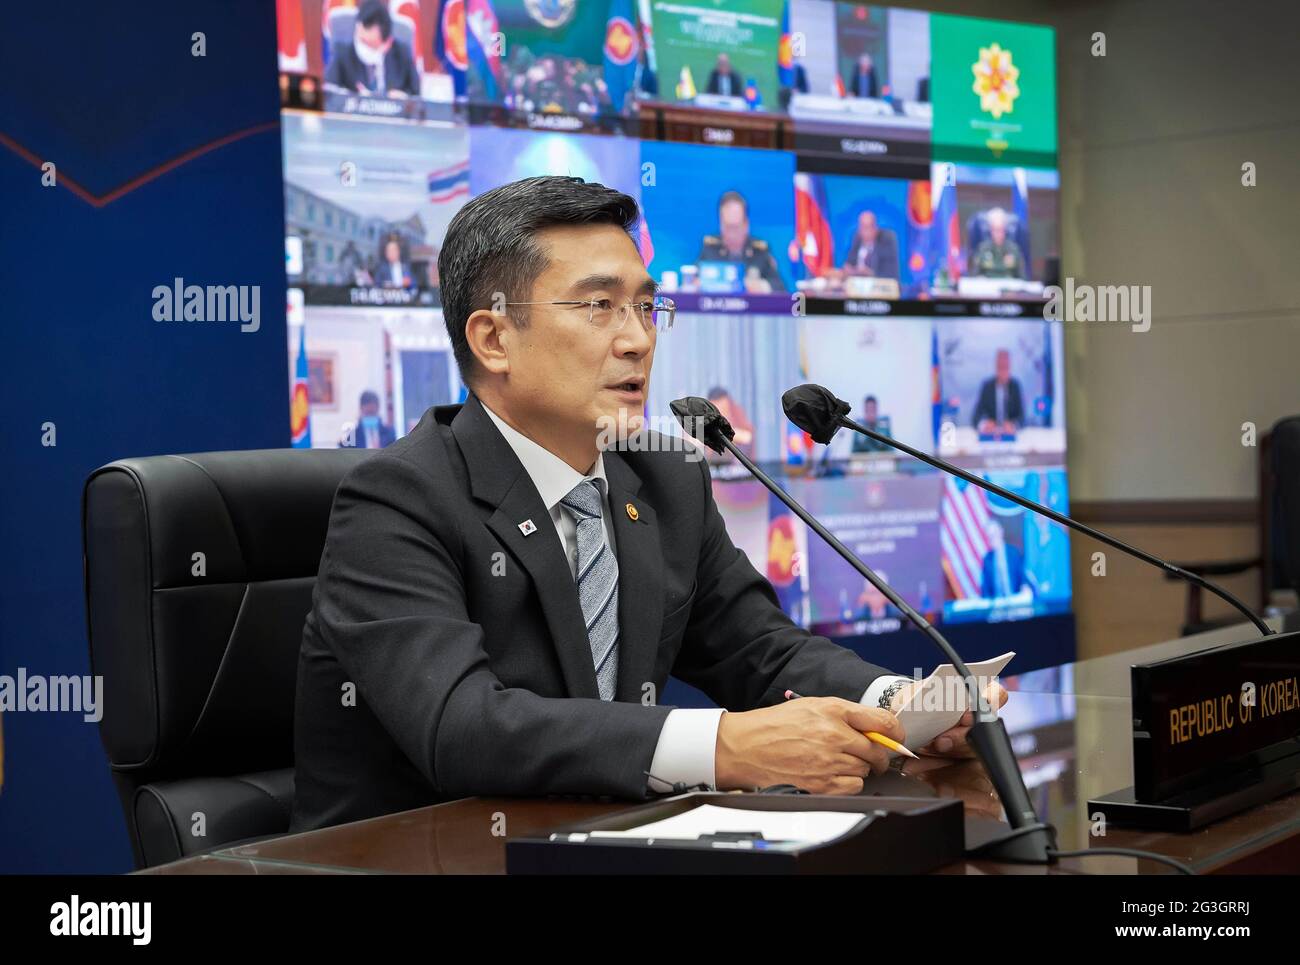 16 giugno 2021, SEOUL, COREA DEL SUD: 16 giugno 2021-SEOUL, 16 giugno (Yonhap) -- Mercoledì il ministro della Difesa Suh Wook ha discusso la situazione della sicurezza globale con i suoi omologhi dei paesi della regione e ha chiesto un continuo sostegno agli sforzi della Corea del Sud per stabilire una pace duratura nella penisola coreana, ha detto il suo ufficio. Il suh ha partecipato all'ottava riunione Plus dei ministri della Difesa dell'Associazione delle Nazioni del Sud-Est Asiatico (ASEAN) (ADMM-Plus), organizzata tramite un collegamento video, che ha riunito i principali funzionari della difesa di 10 paesi ASEAN e otto stati membri, Corea del Sud, Stati Uniti, Ja Foto Stock